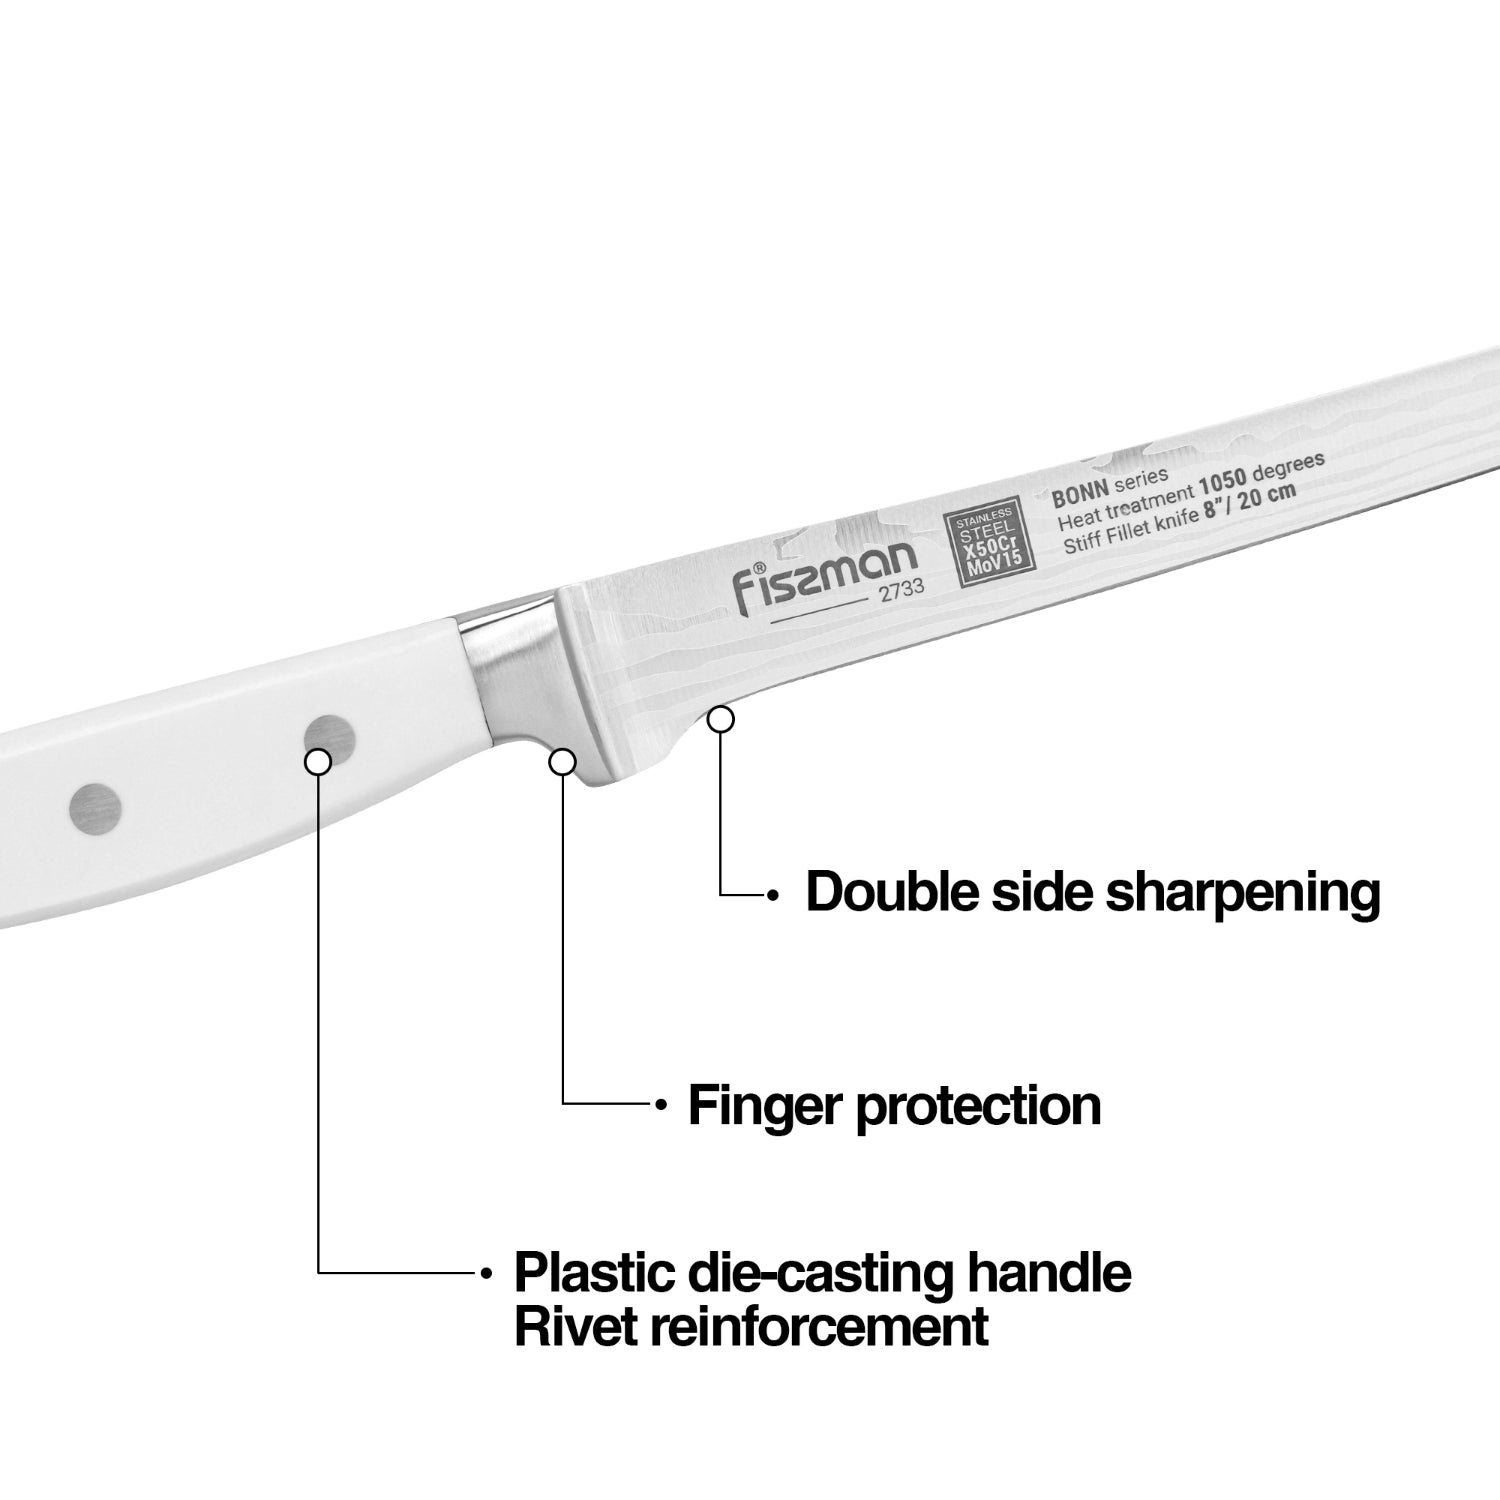 Fissman 8'' Stiff Fillet Knife Bonn - X50CrMoV15 steel